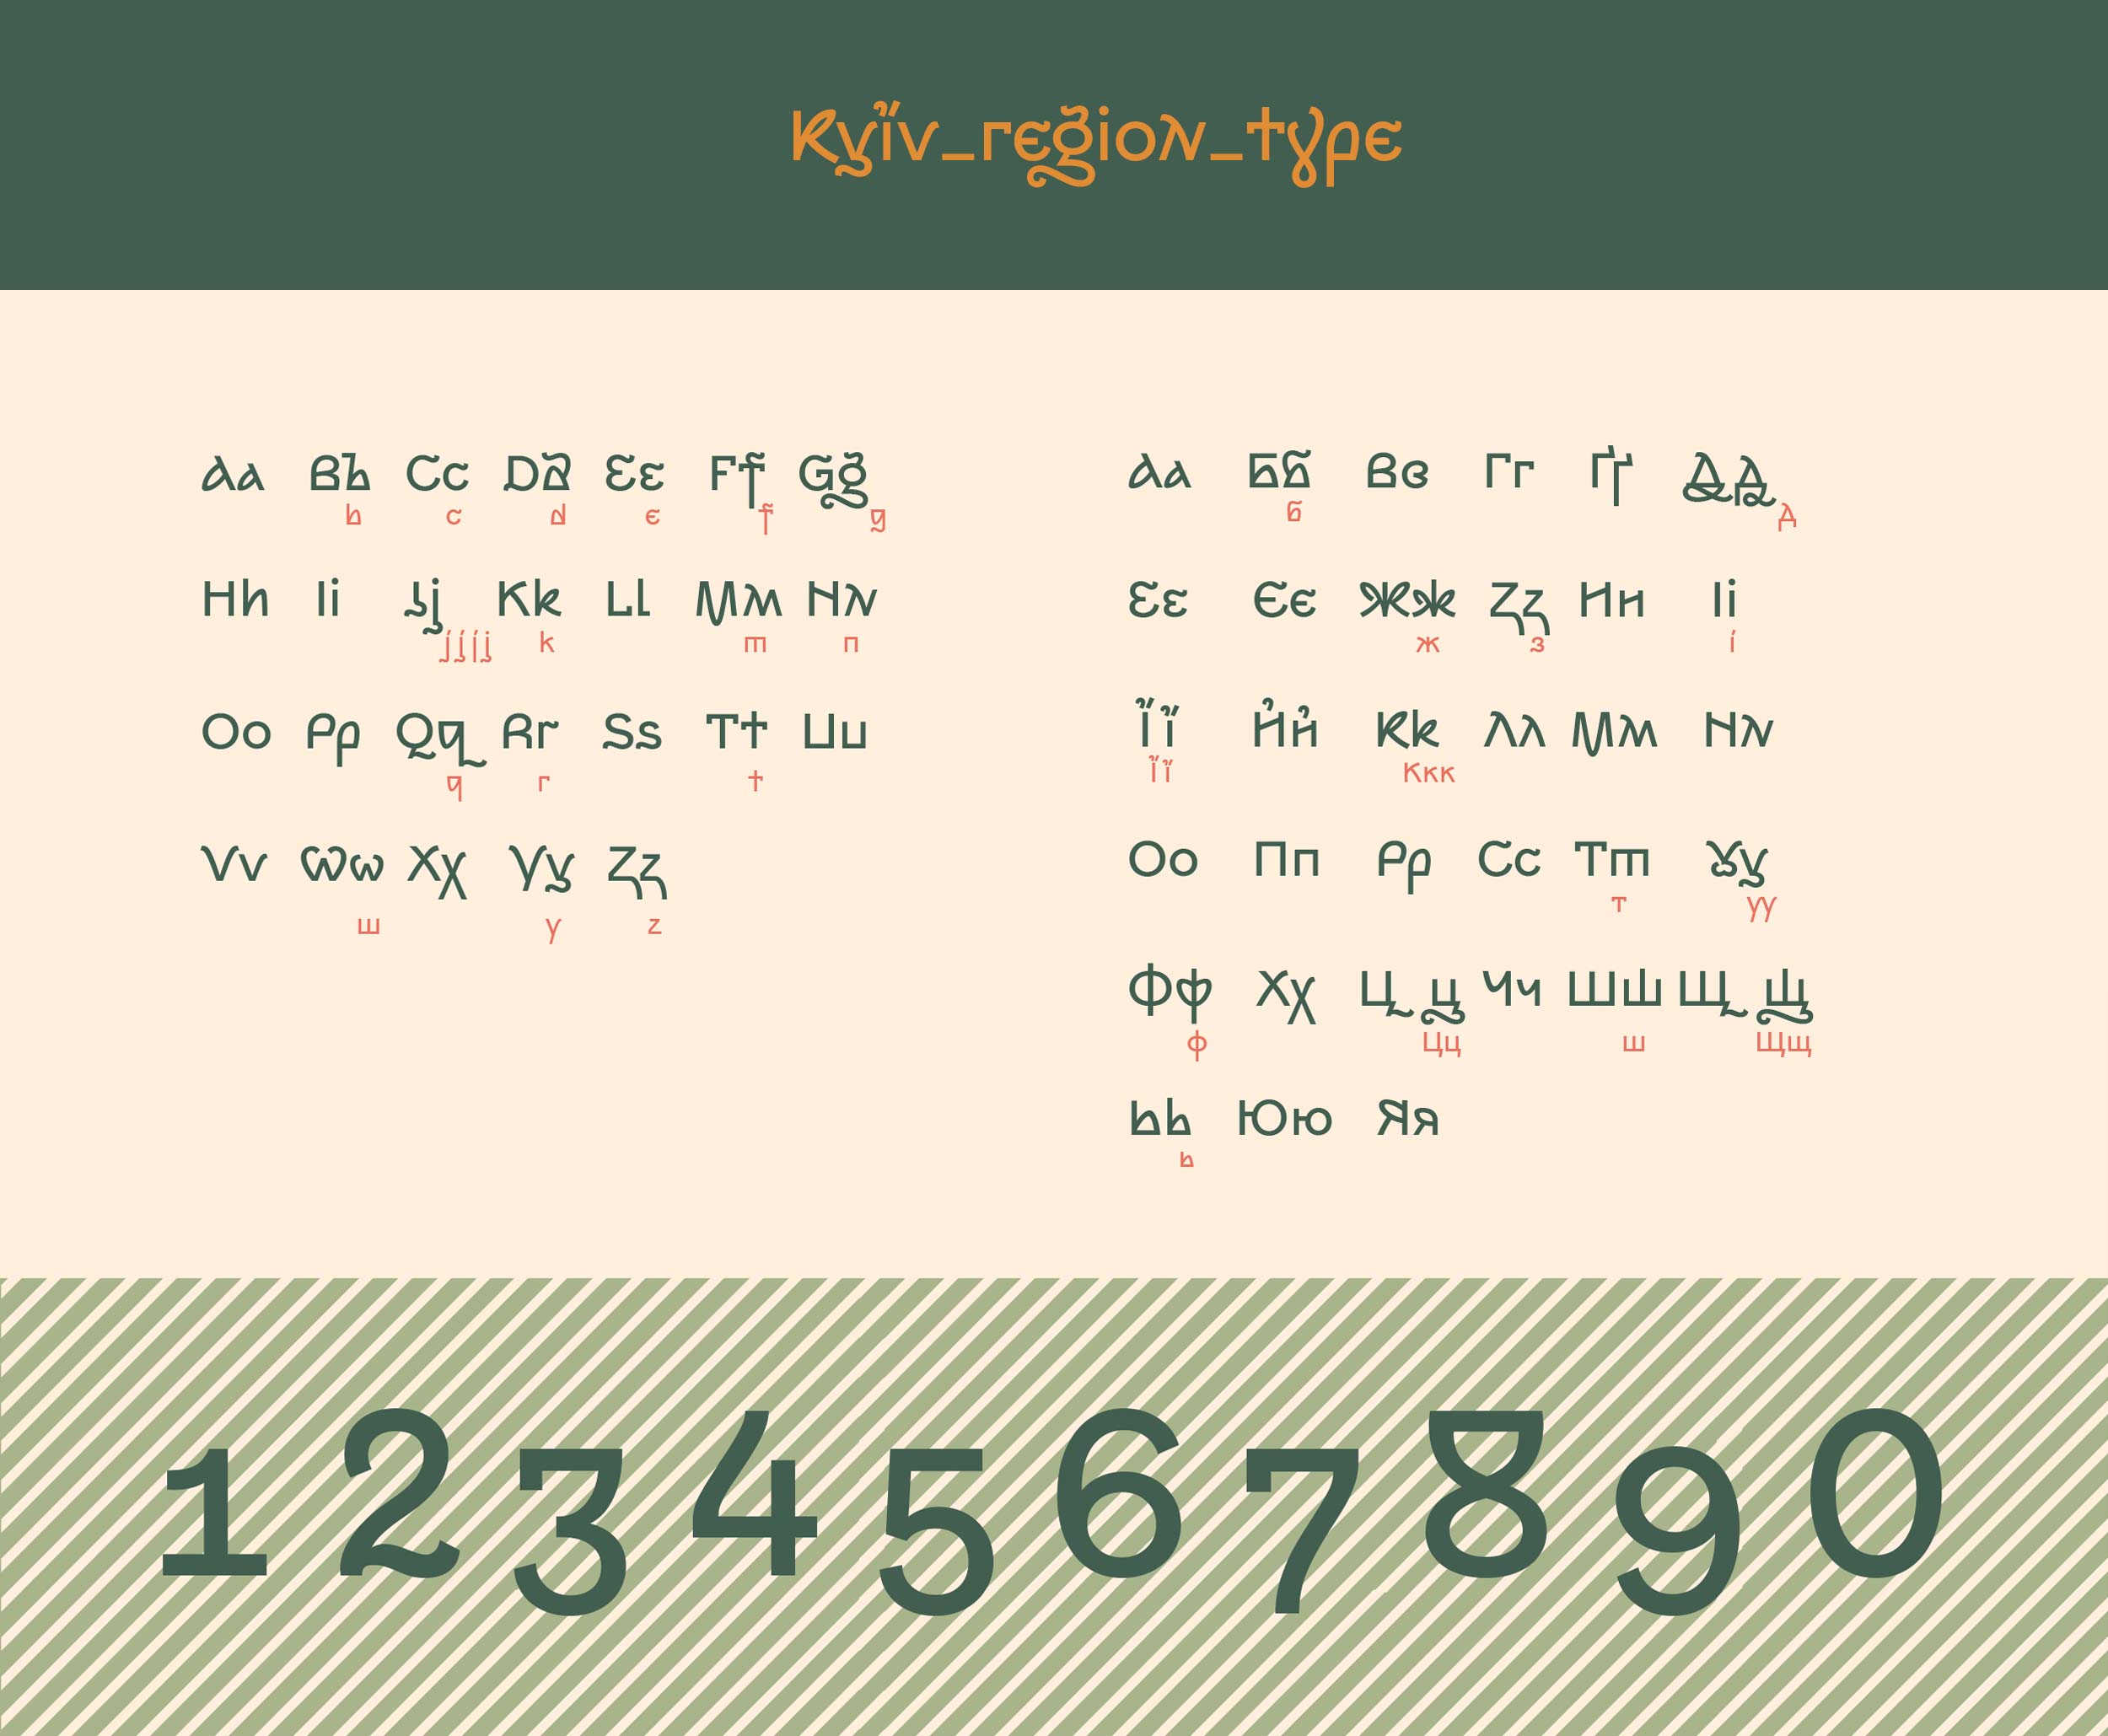 Kyiv-region-type_all-letters